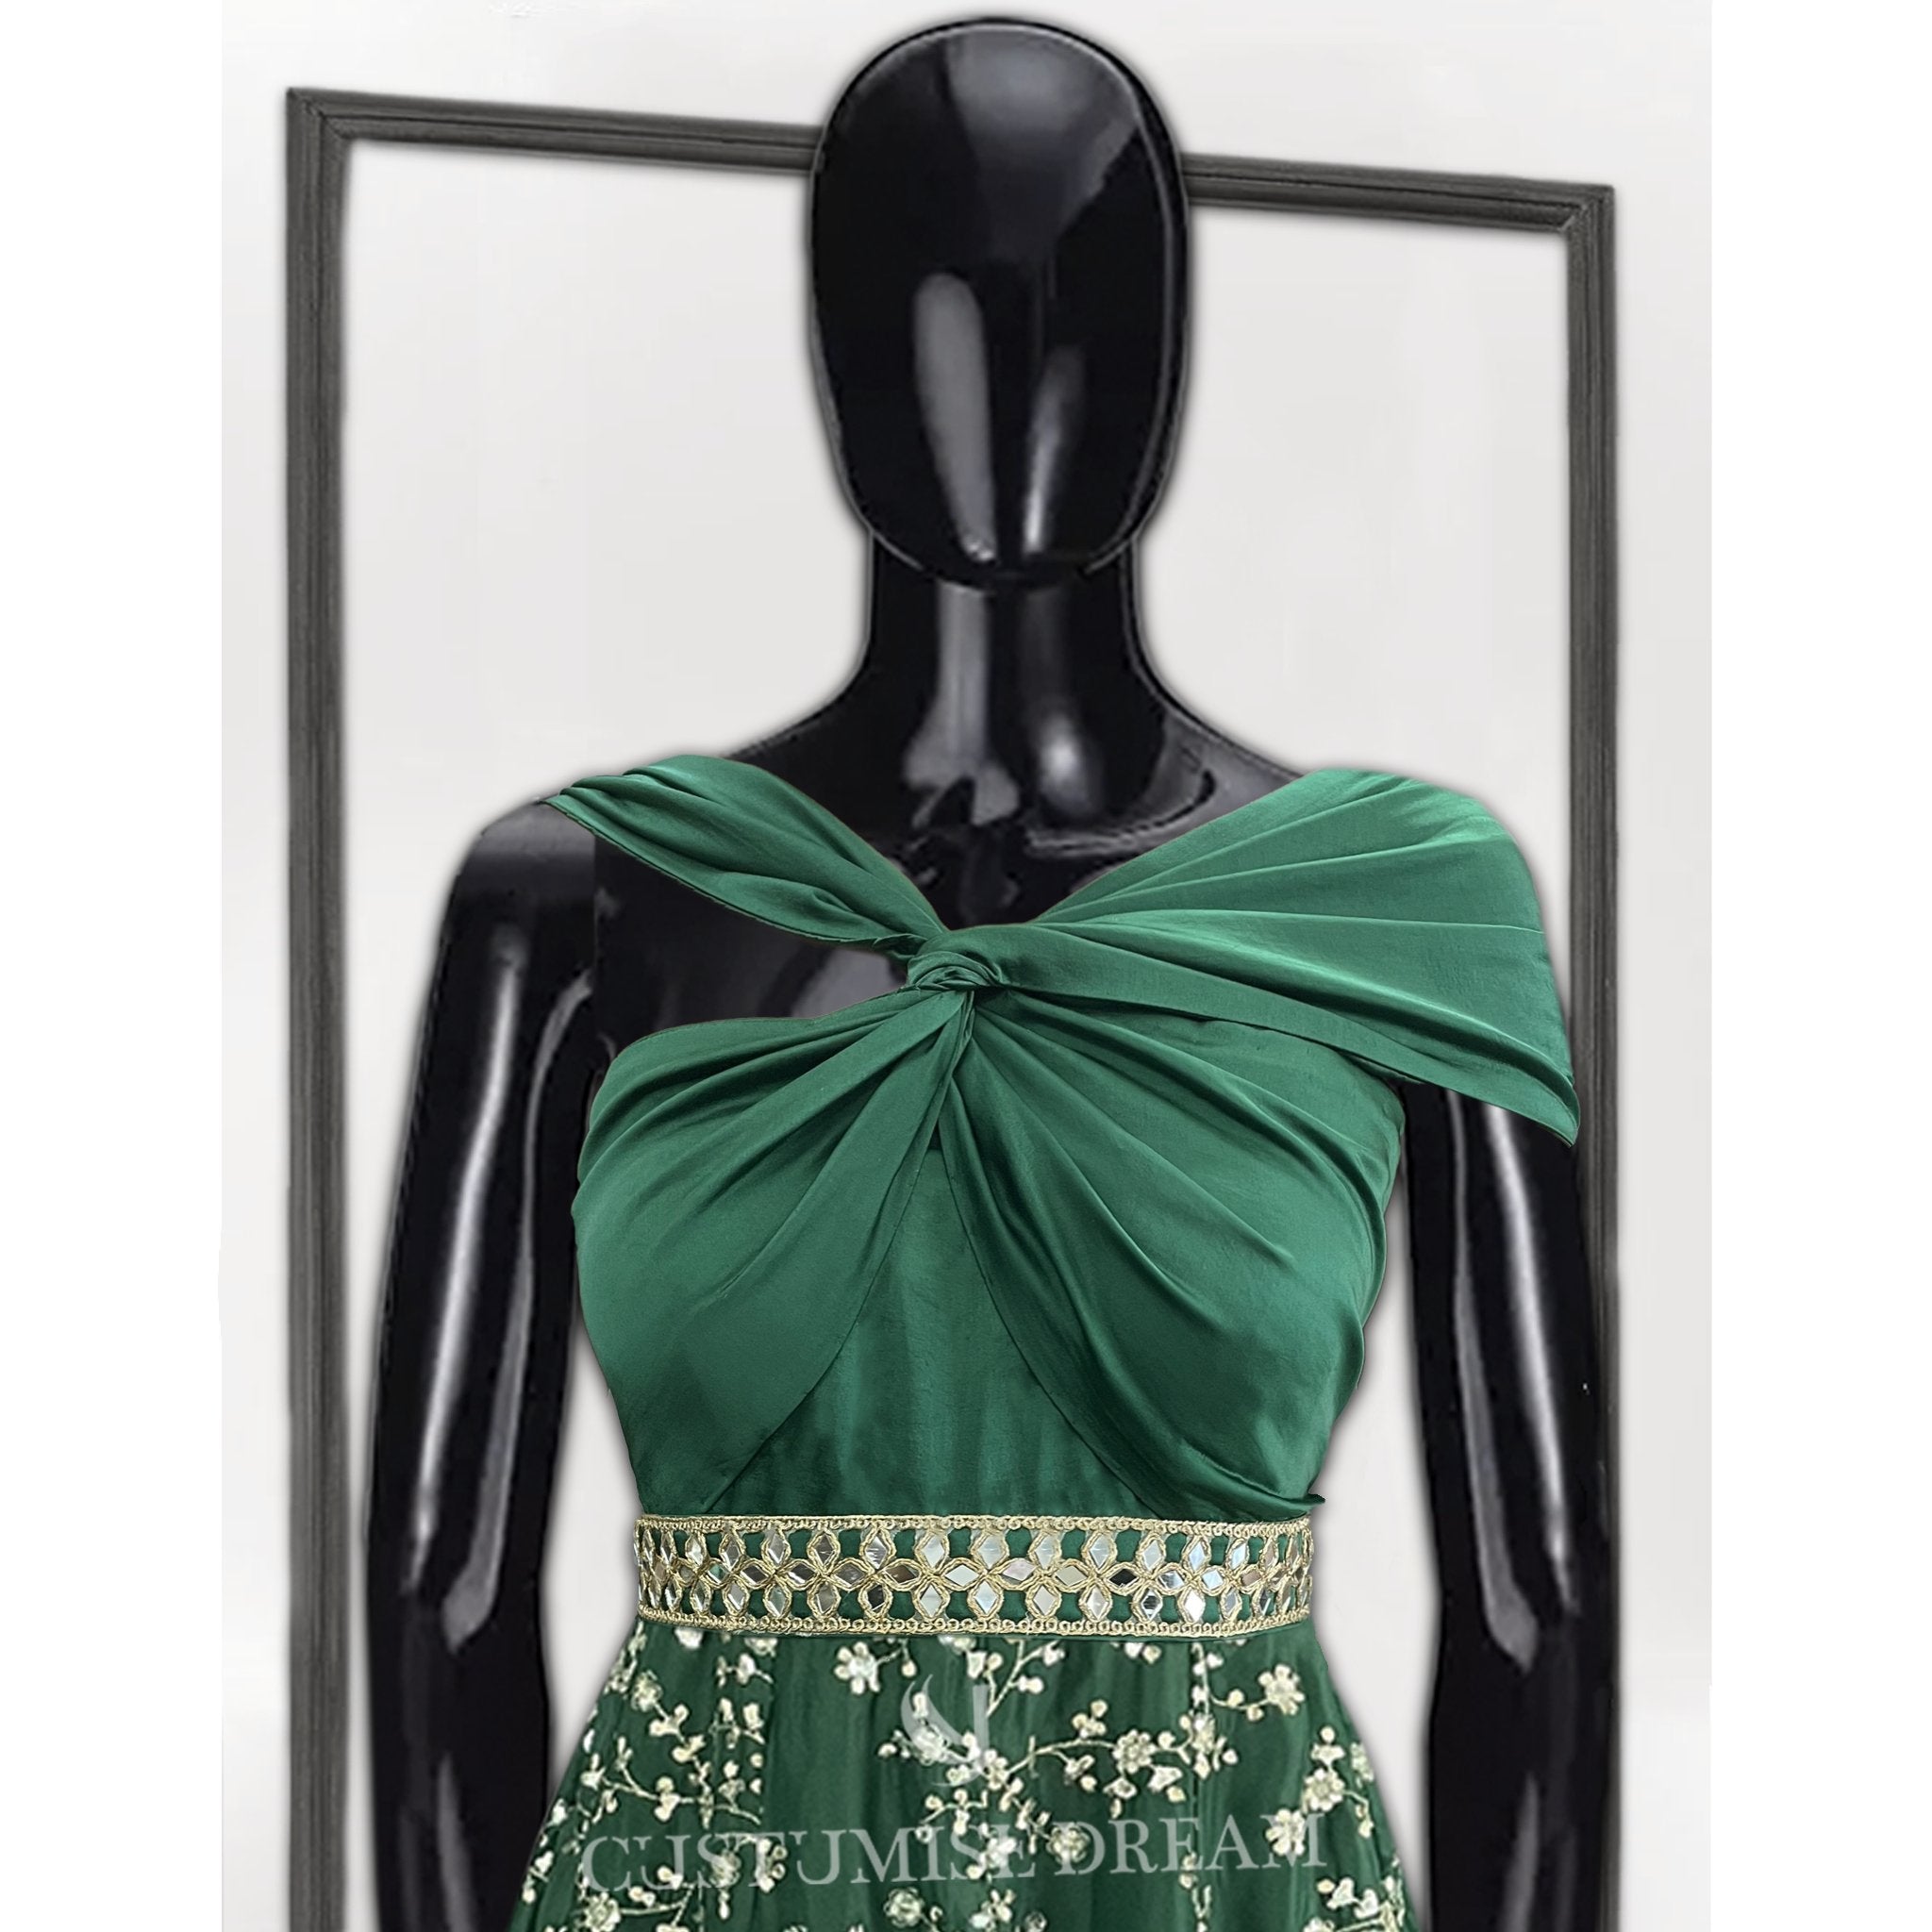 Mirror-Embellished Bottle Green Jumpsuit - Indian Designer Bridal Wedding Outfit